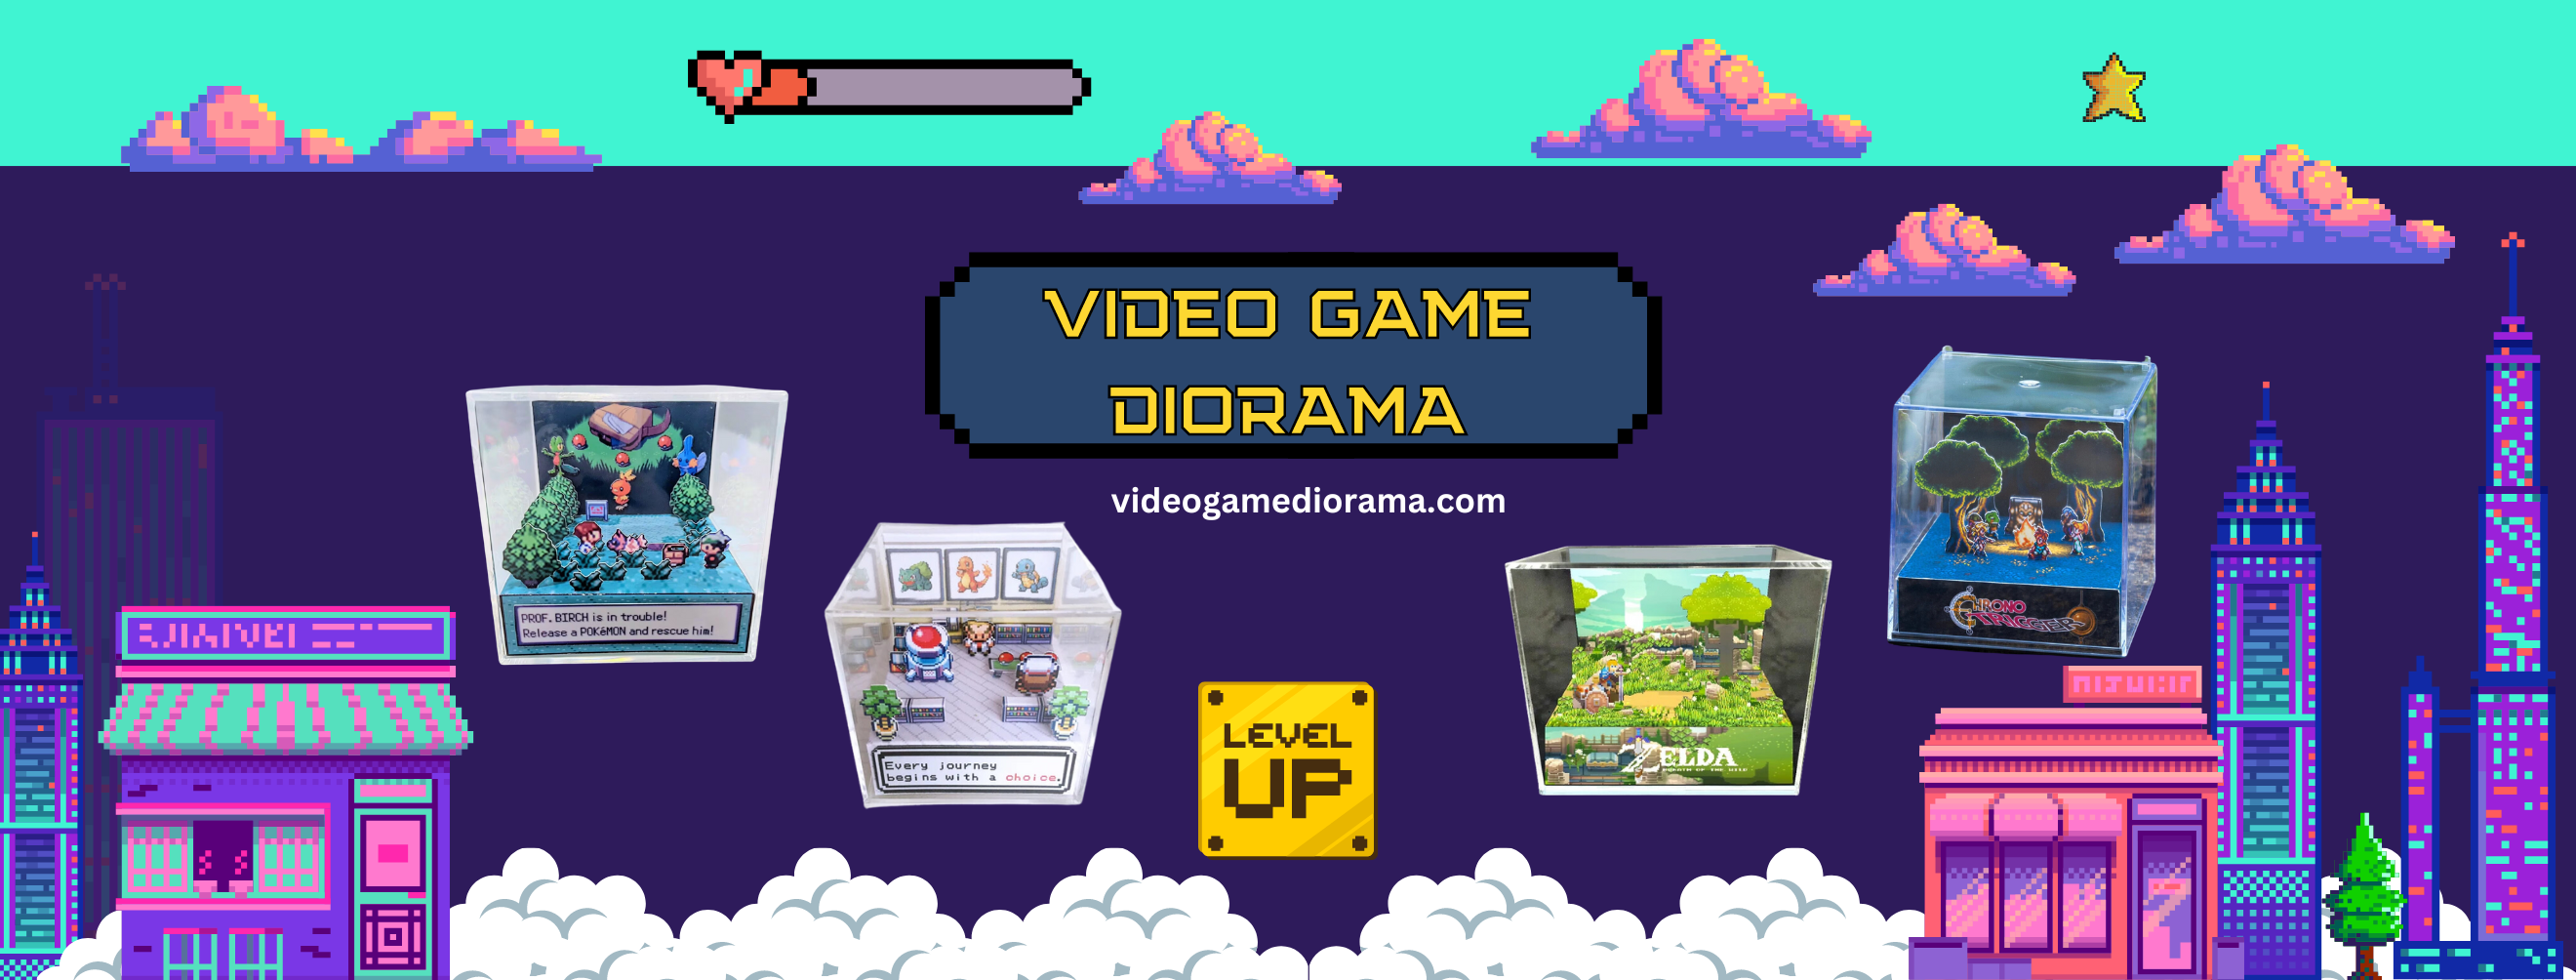 videogamediorama - Video Game Diorama Store